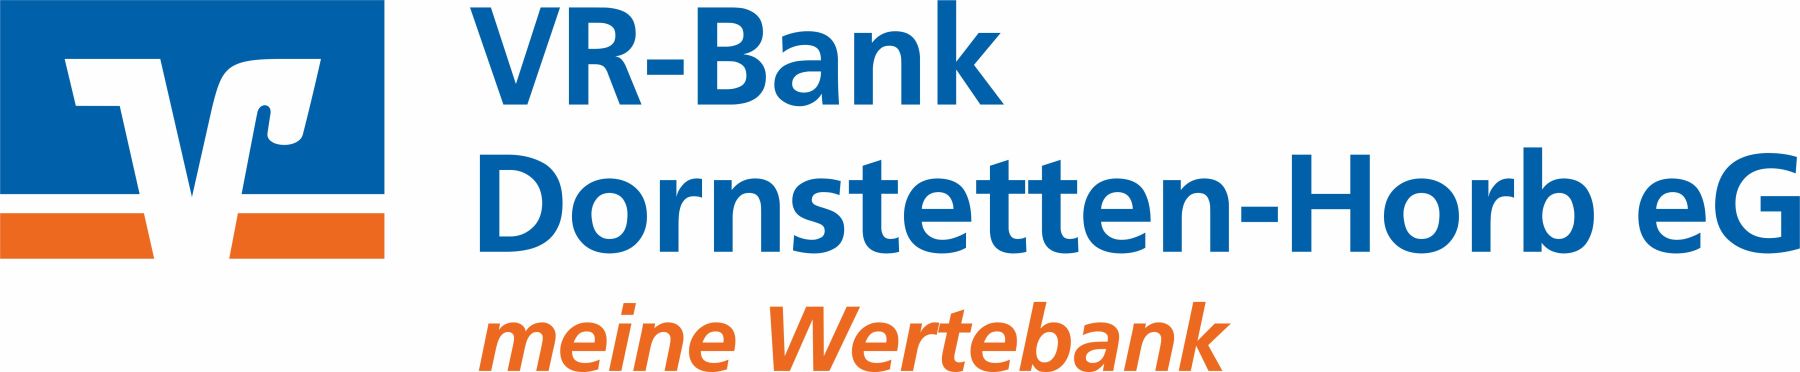 Logo-links-VR-Bank-Dornstetten-Horb